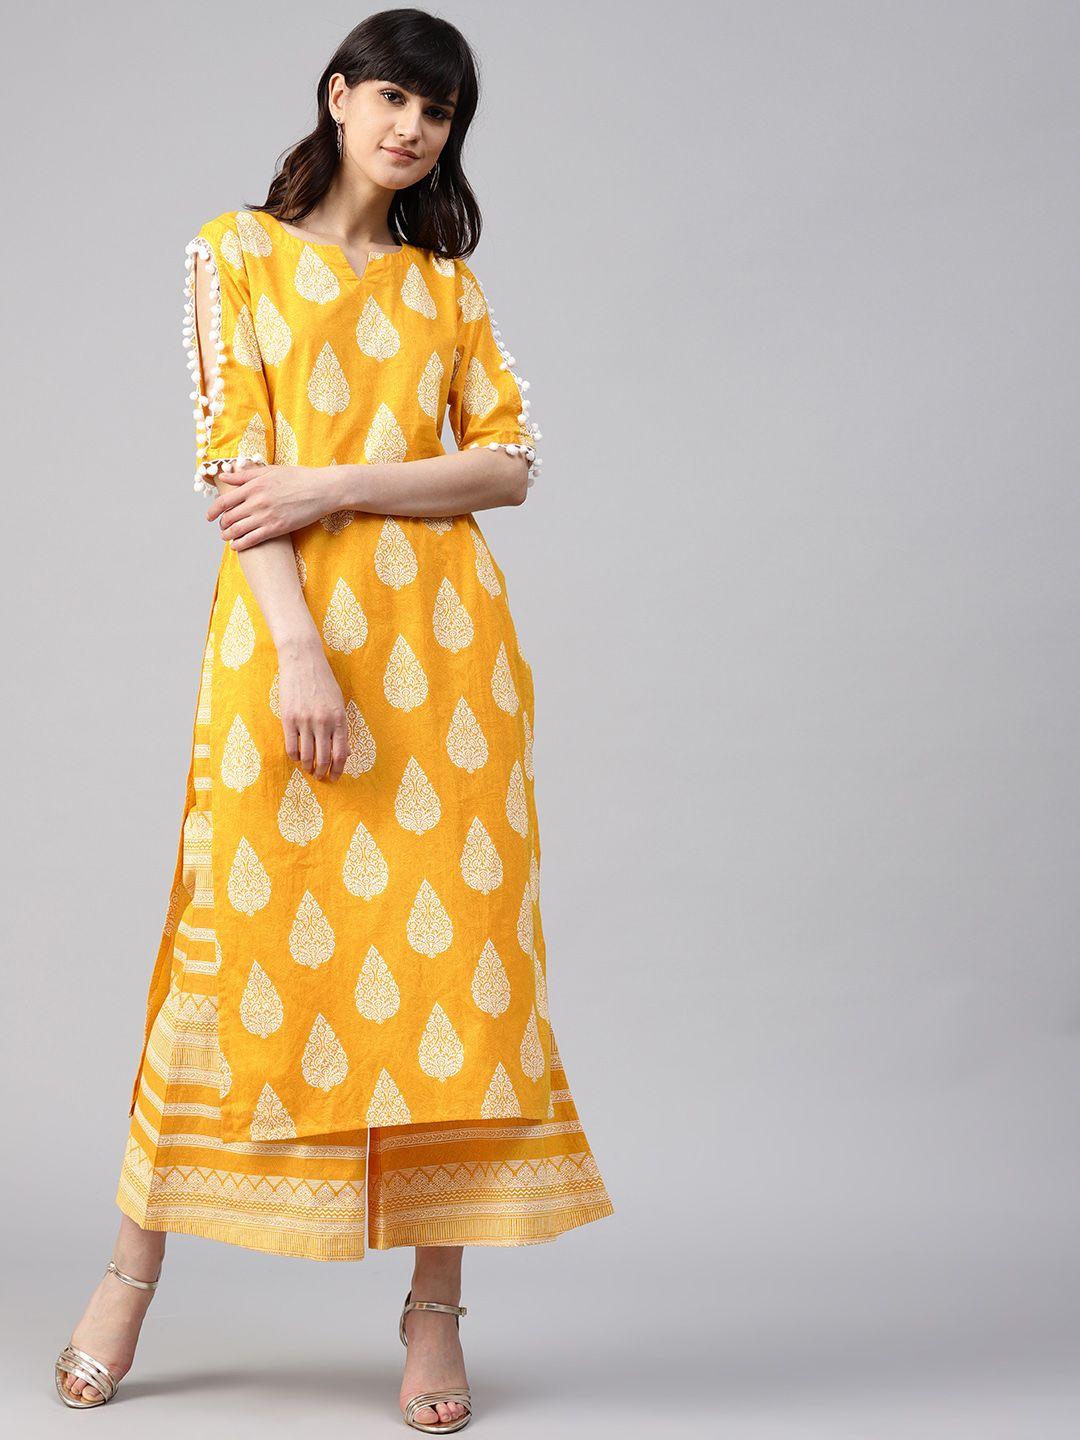 gerua women yellow & white printed kurta with palazzos